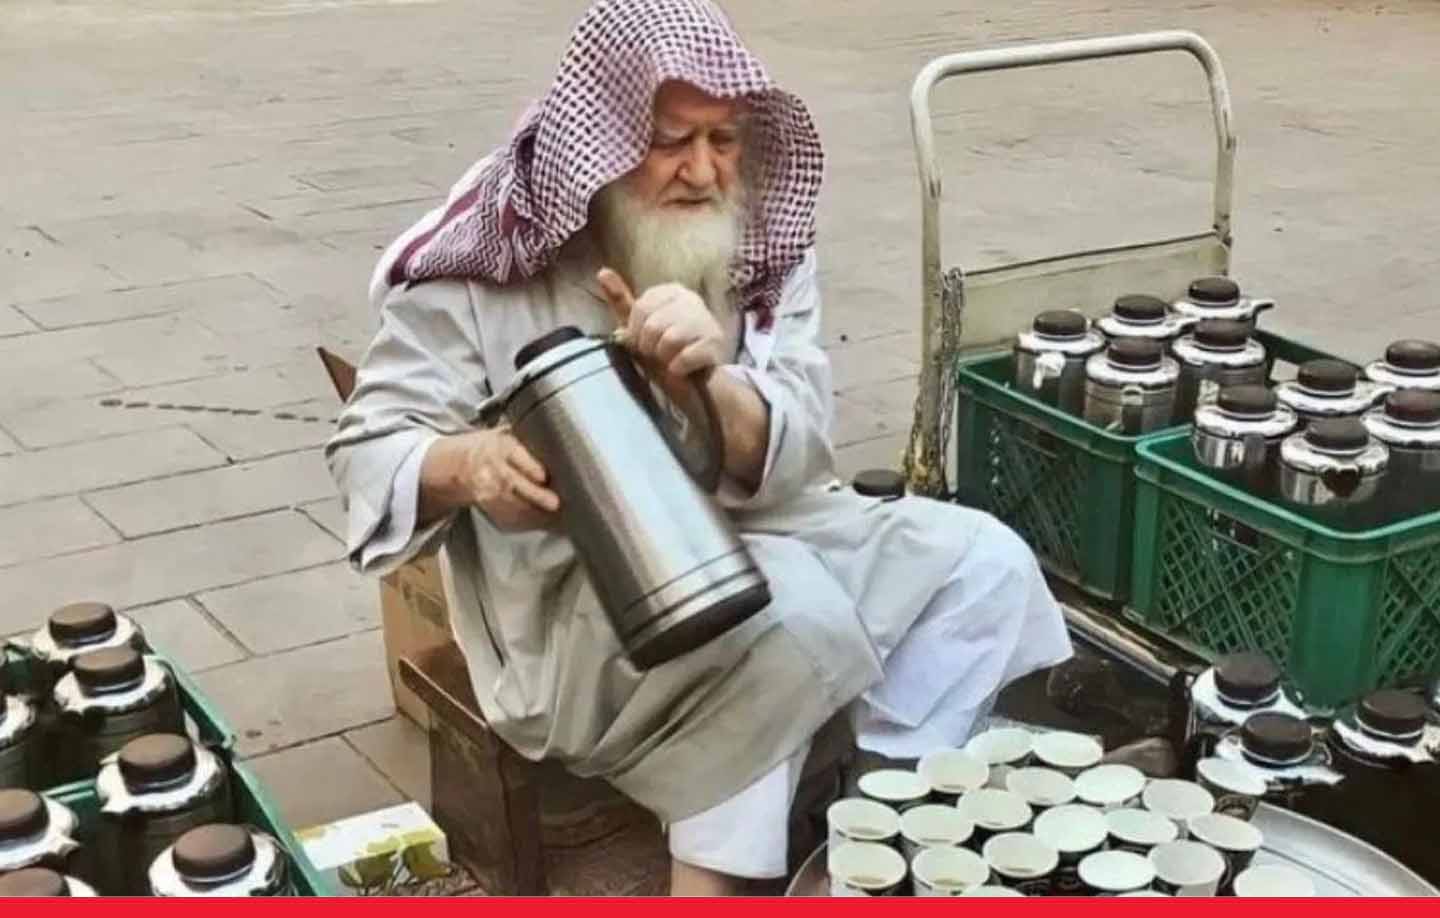 40 साल से मुसलमानों के सबसे पवित्र शहर मदीने में फ्री चाय-कॉफी पिलाने वाले शख्स की मौत